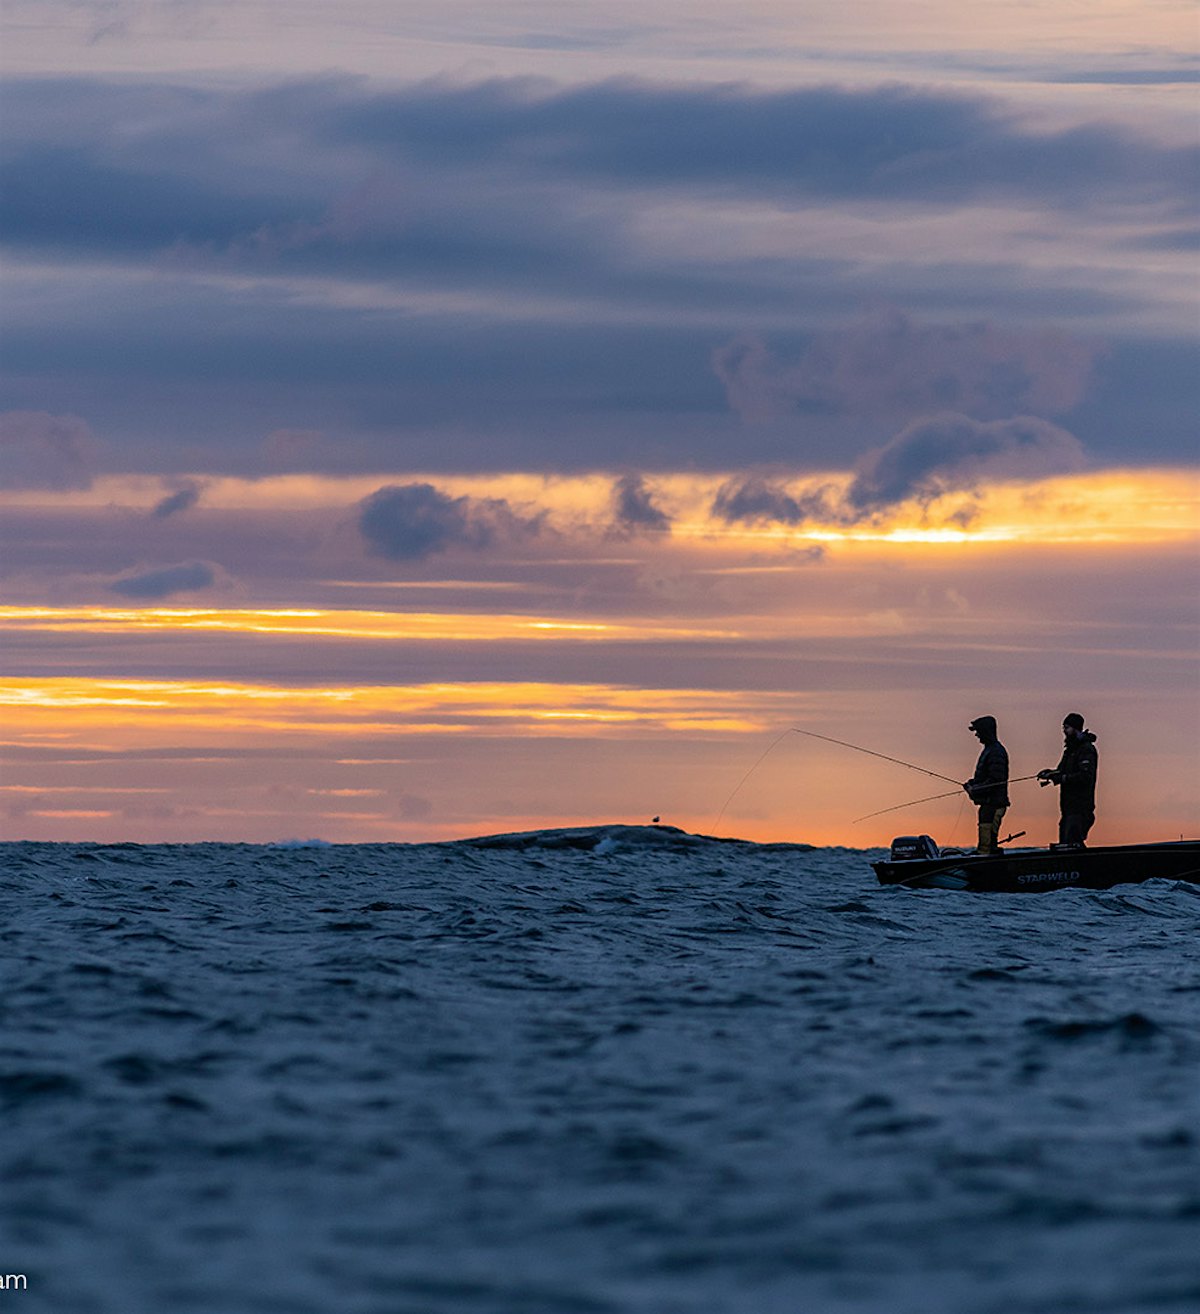 Liten båt på havet, med to fiskere i solnedgang.